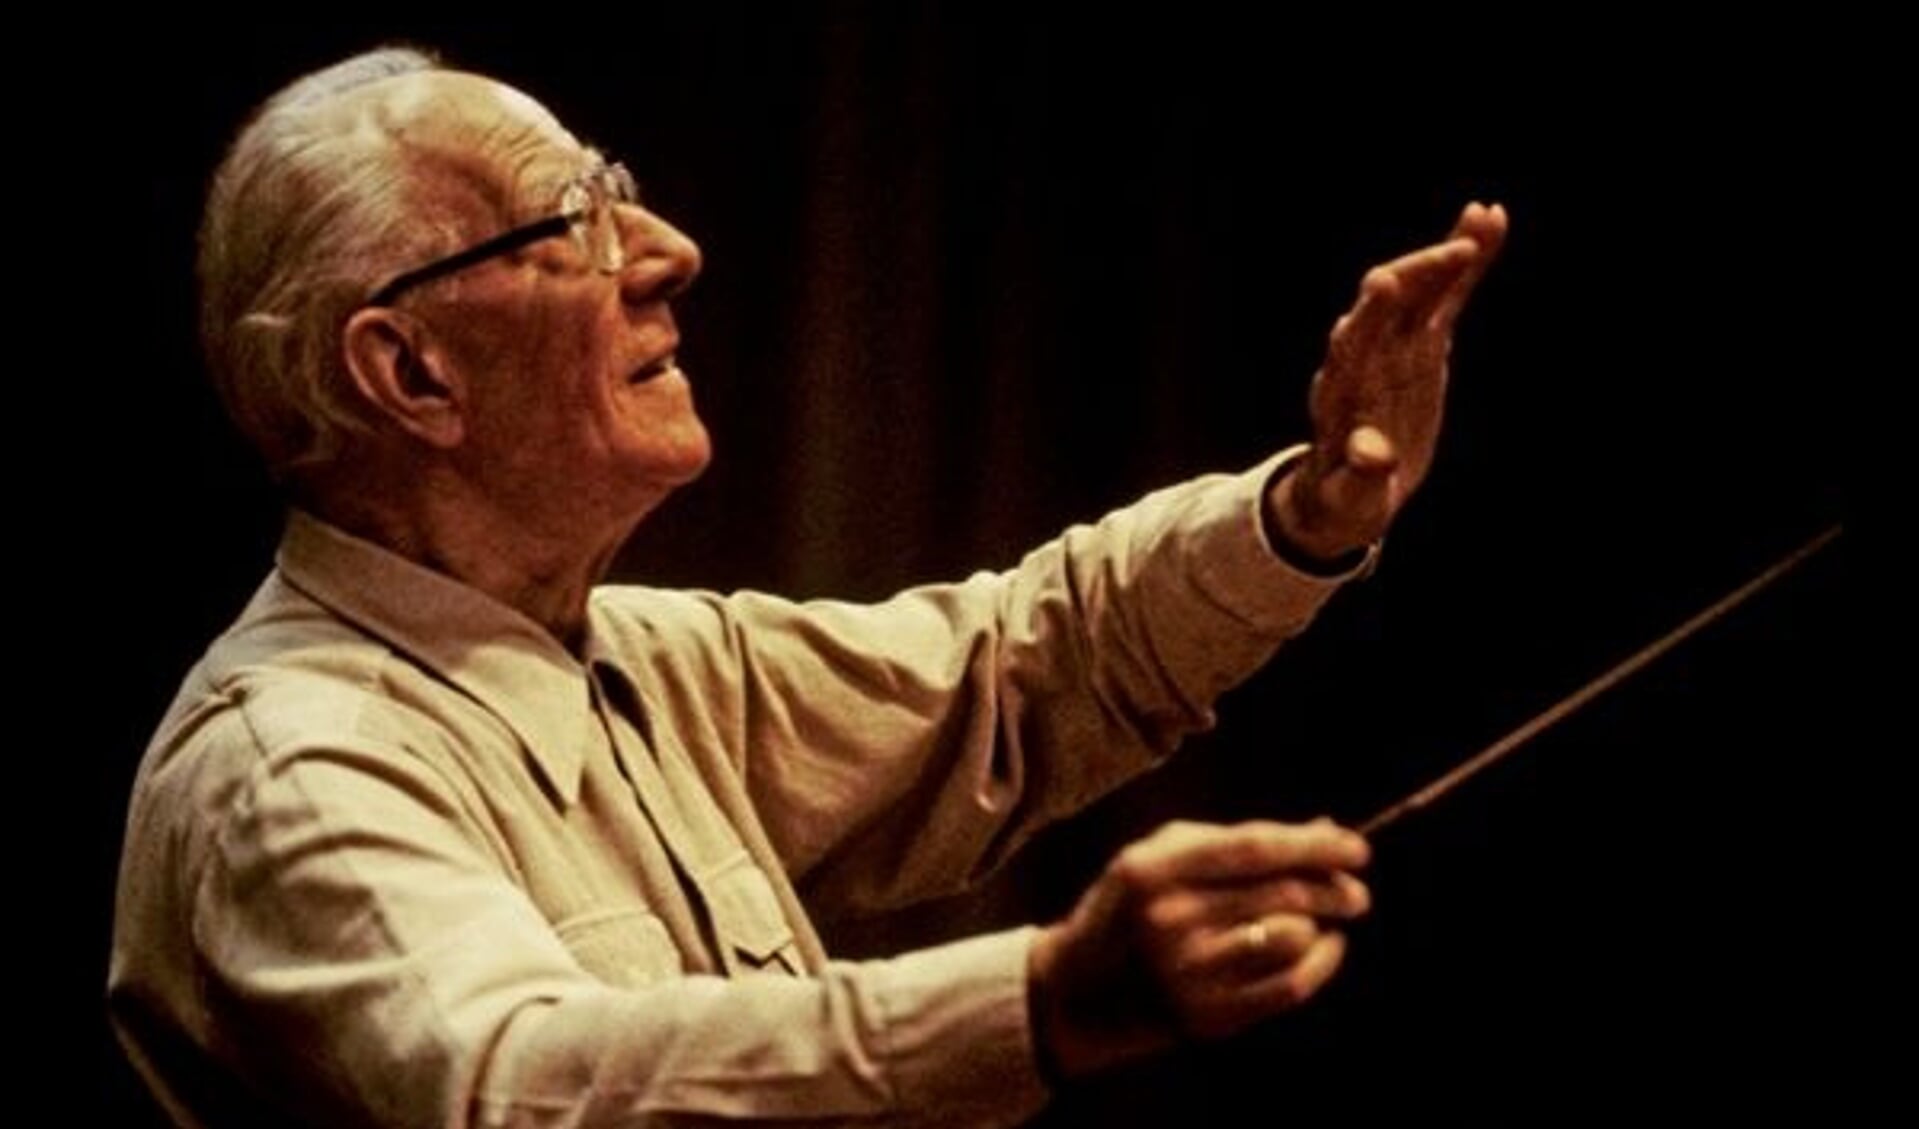 Carl Orff op oudere leeftijd als dirigent. Hij was behalve componist ook muziekpedagoog en werd beroemd door de 'Carmina Burana'.